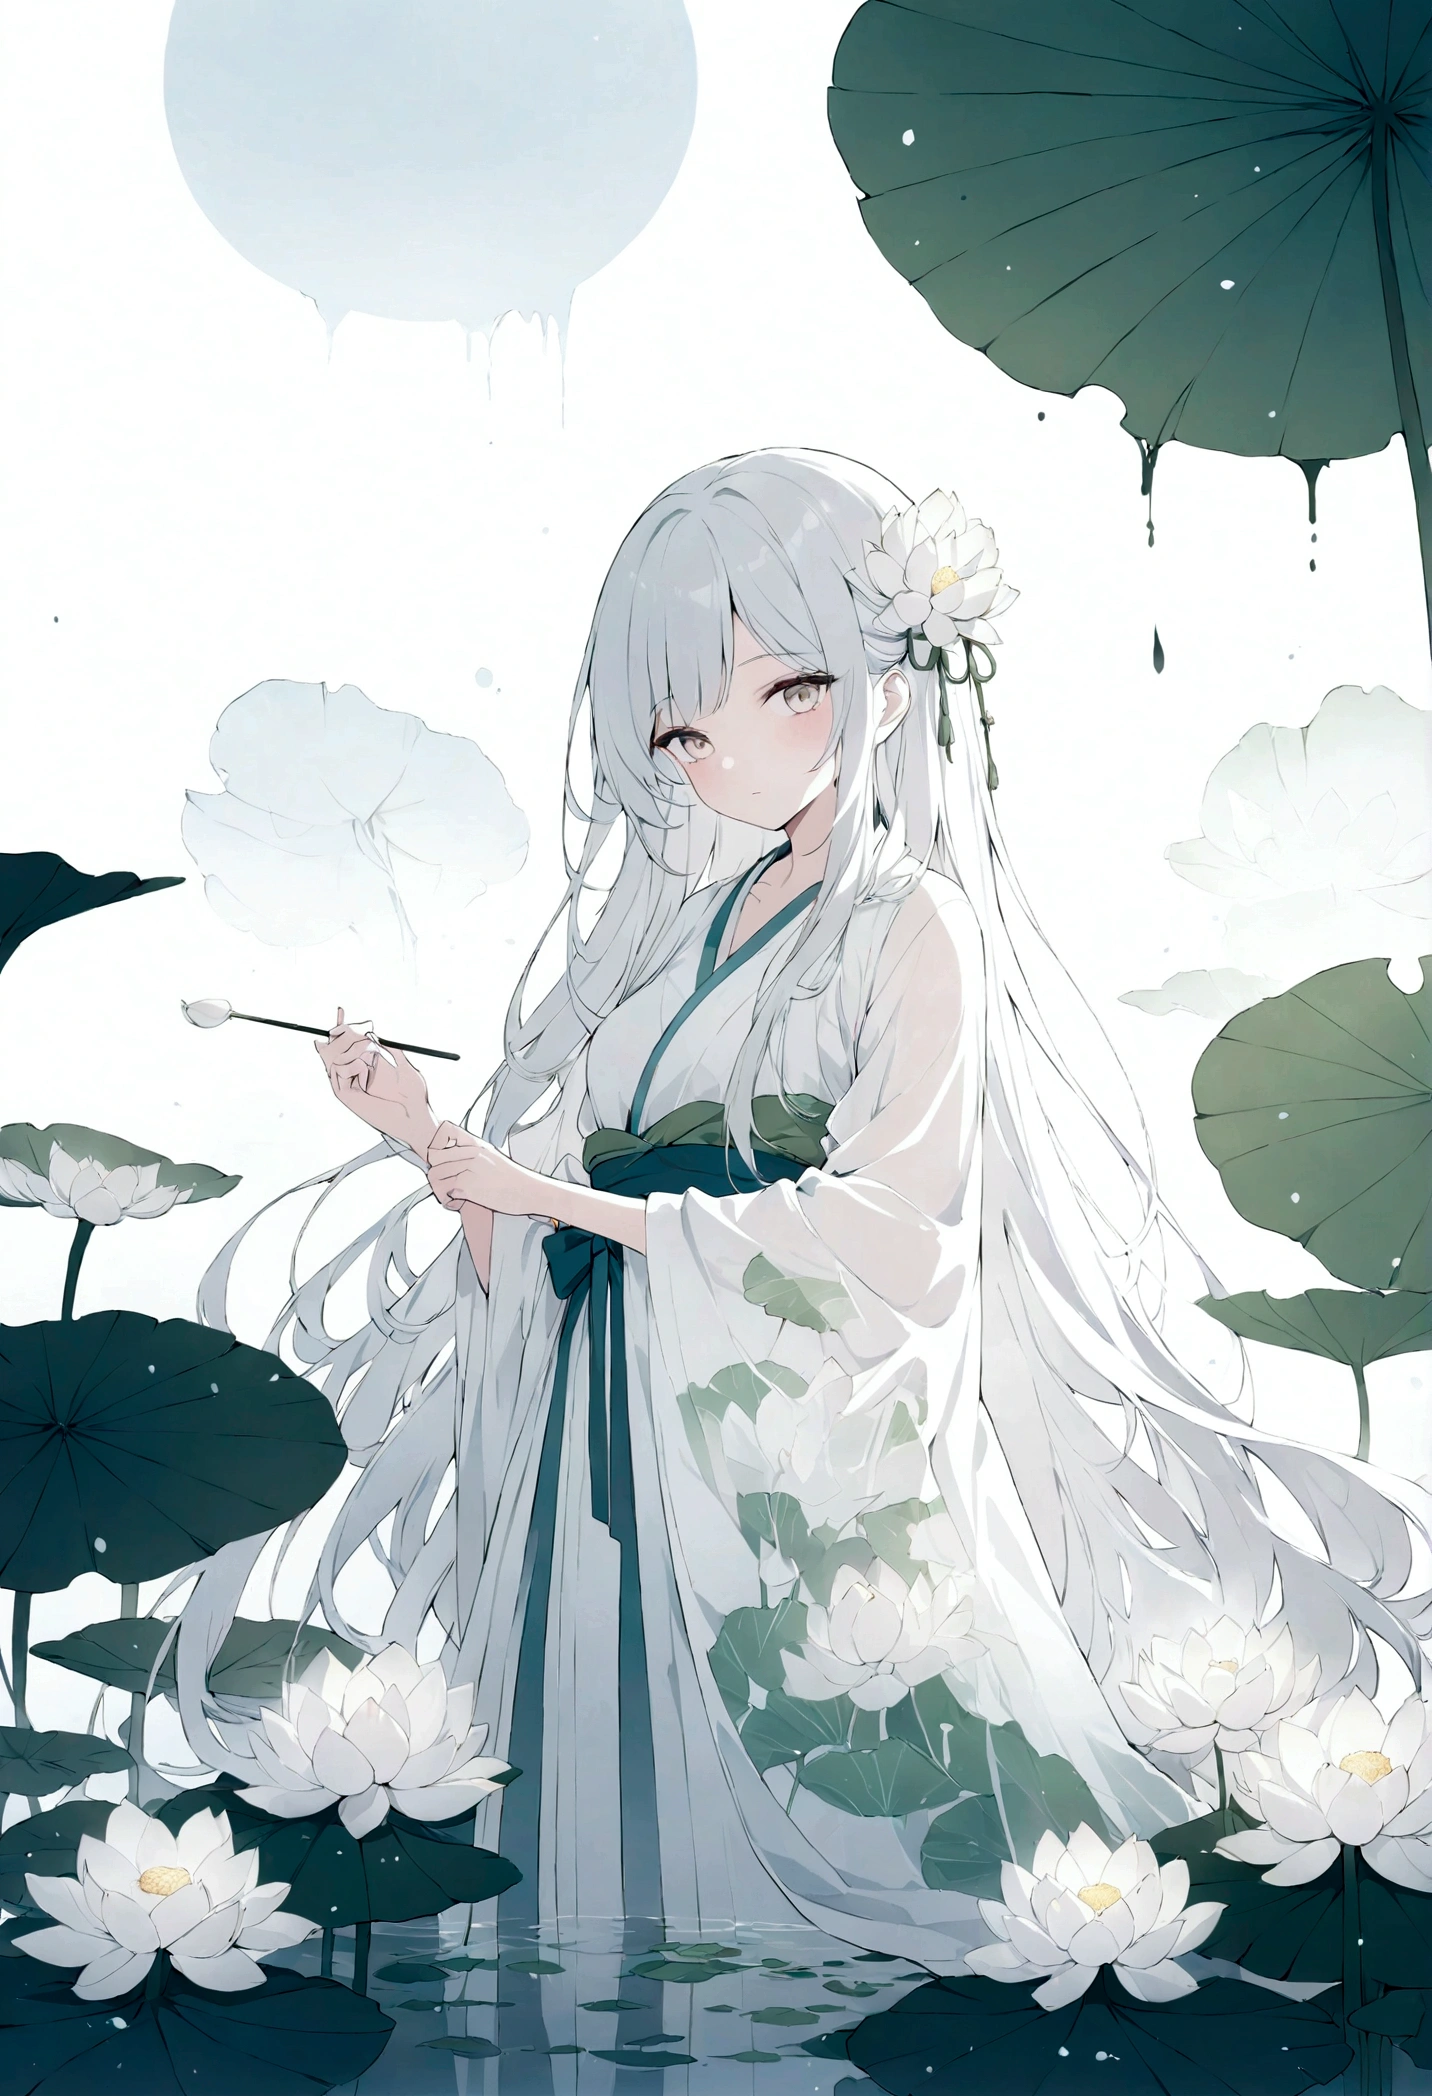 中国の漢服を着た長い髪の美しく詳細な女の子の二重露光フラットベクター(顔はきれい, beautiful and 完璧)画像 ( 完璧解剖结构 ) ，背景には巨大な白い蓮の花と巨大な蓮の葉が描かれている(半透明の白い蓮の葉) 完璧, 美しく, 精巧なインクイラストスタイル, 夢のような幻想的なアートワーク、コンセプチュアルなアートワークの傑作, 最高品質, 非常に詳細な, 高品質のゴンビ水墨画スタイルのフラットベクター